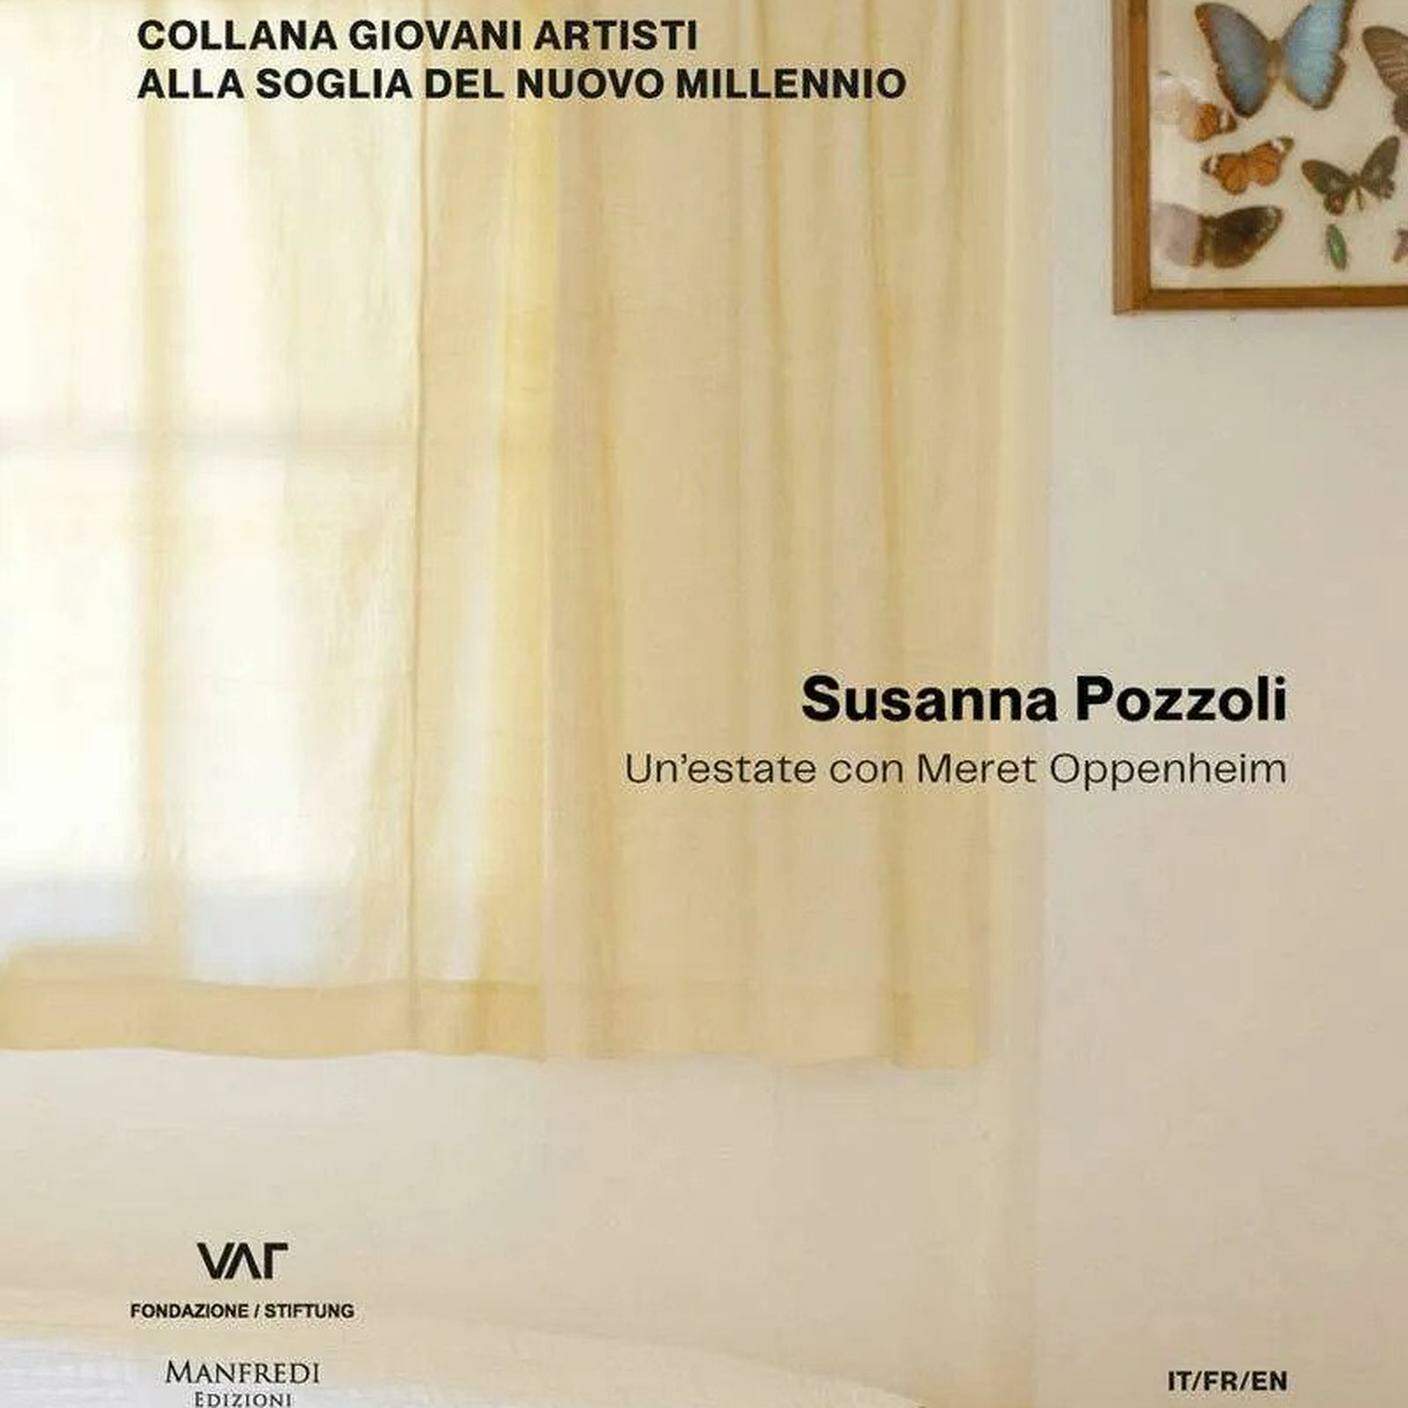 Susanna Pozzoli, "Un’estate con Meret Oppenheim", Manfredi Edizioni